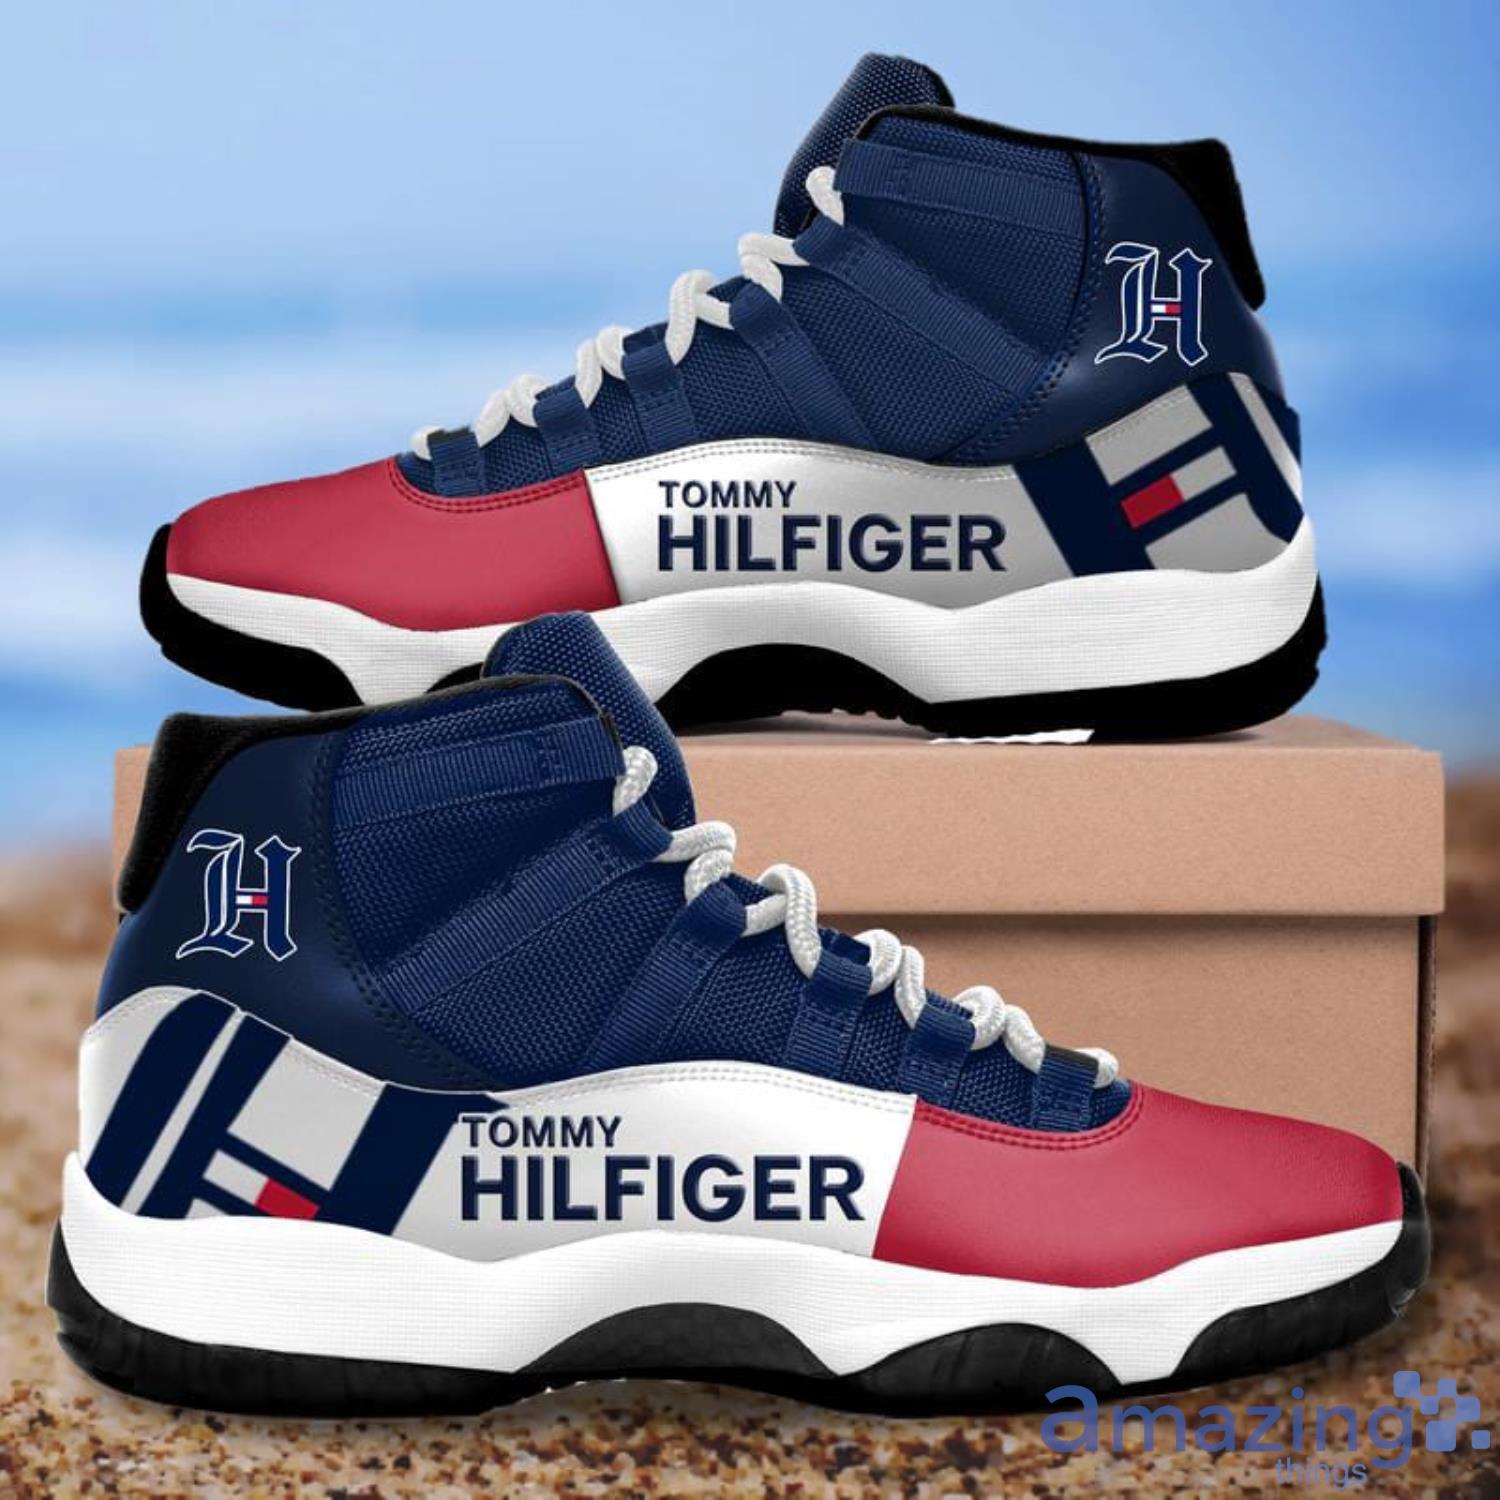 Tommy Hilfiger Air Shoes Sport 11 For Jordan Fans Shoes